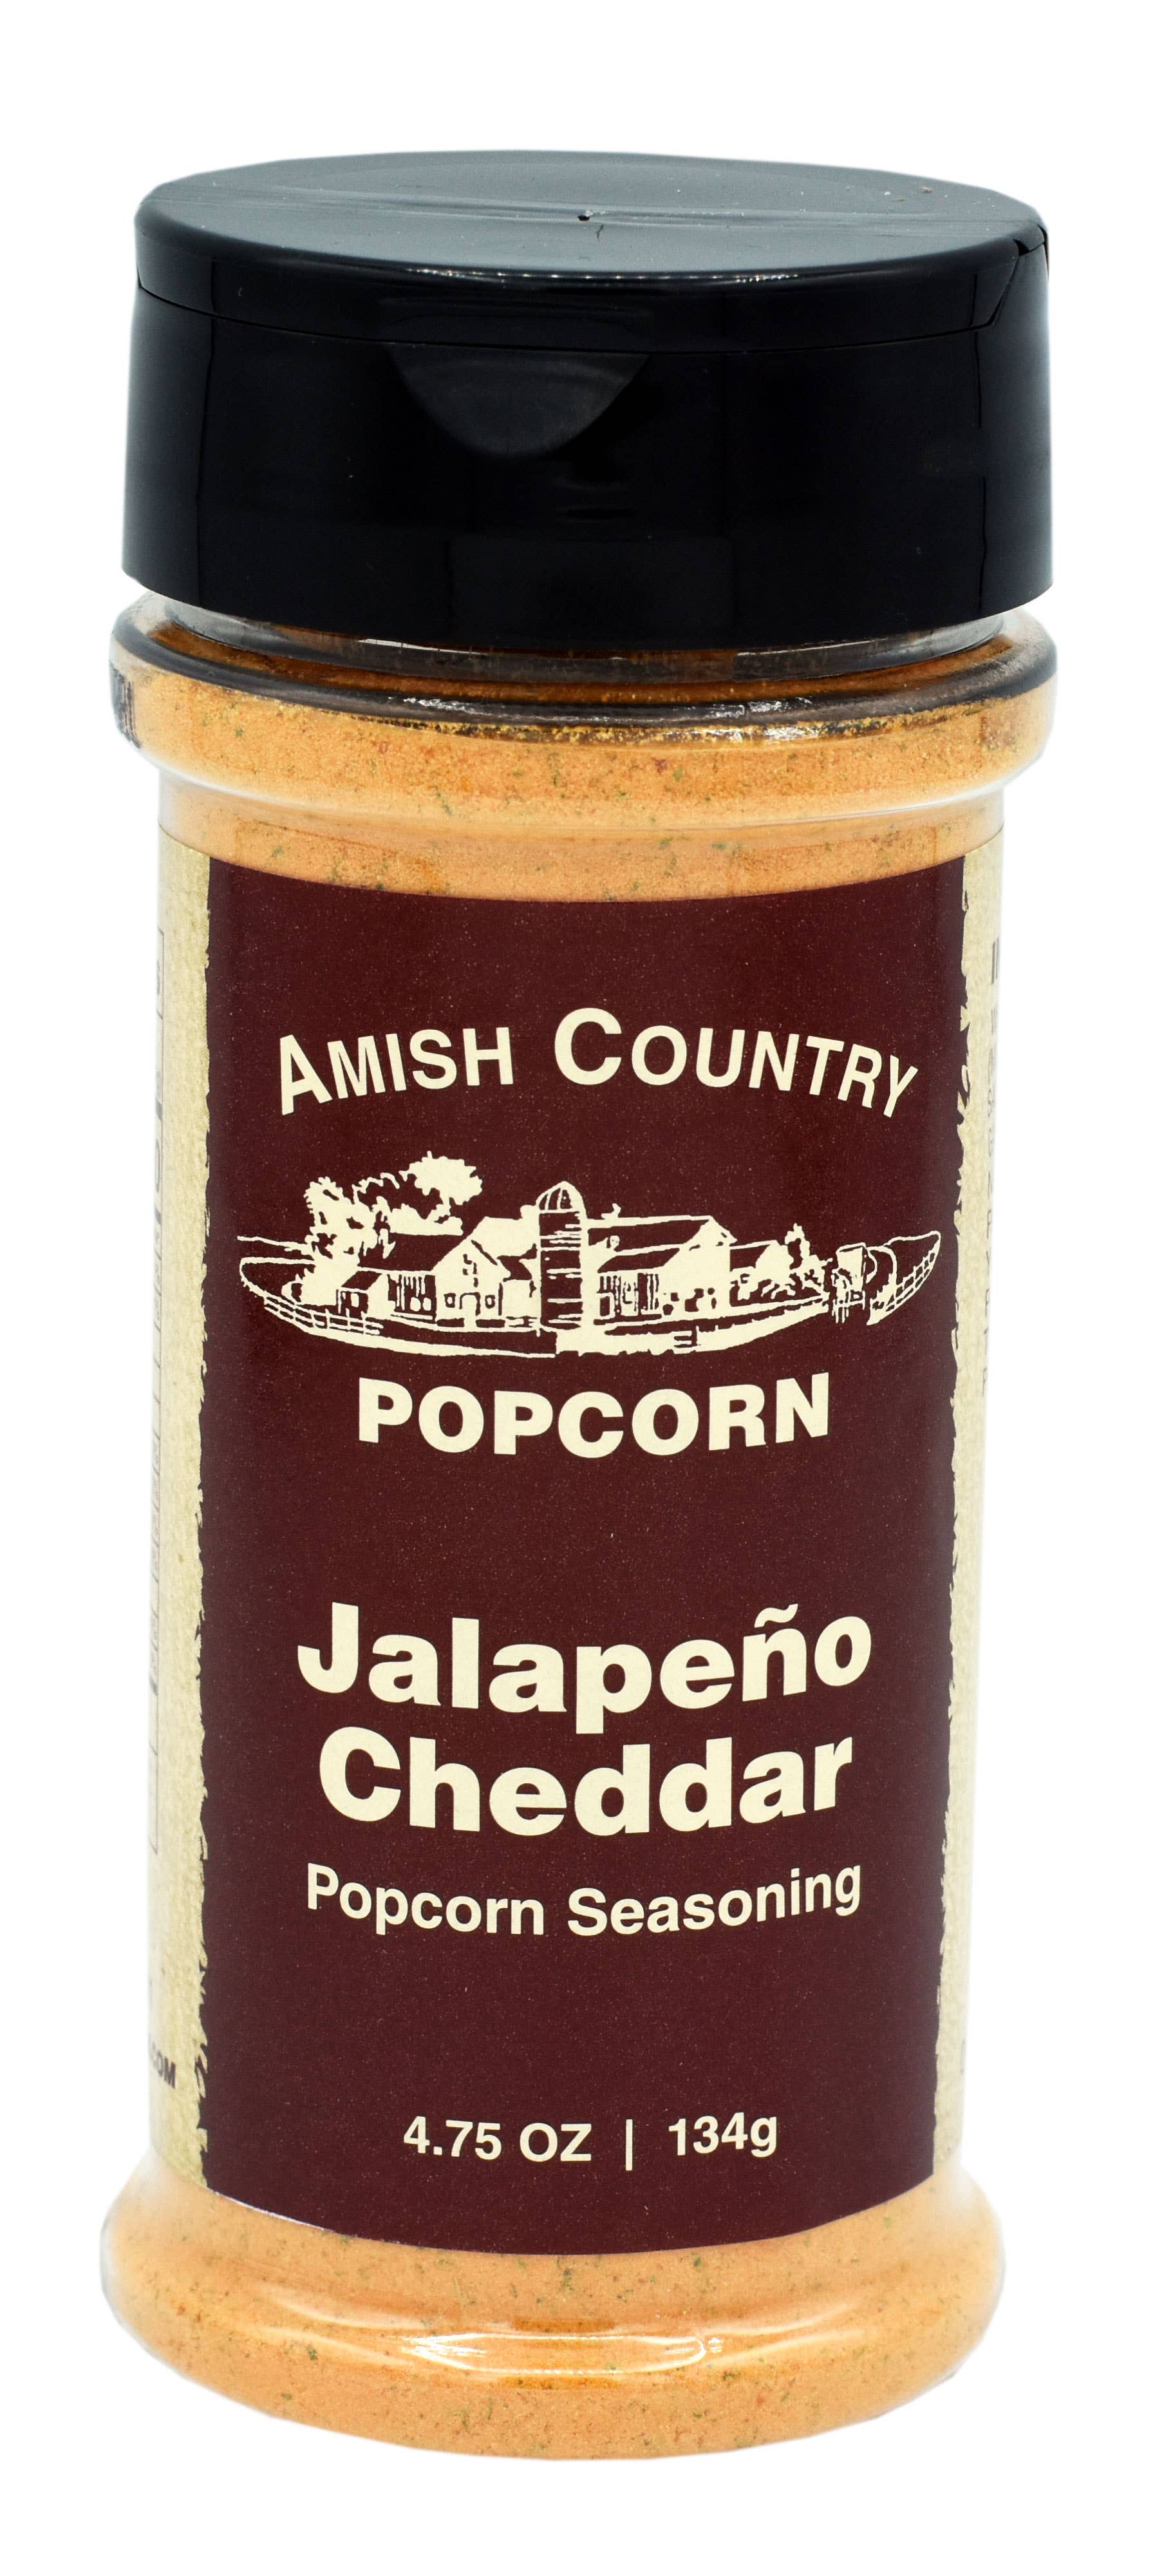 Jalape?o Cheddar Popcorn Seasoning